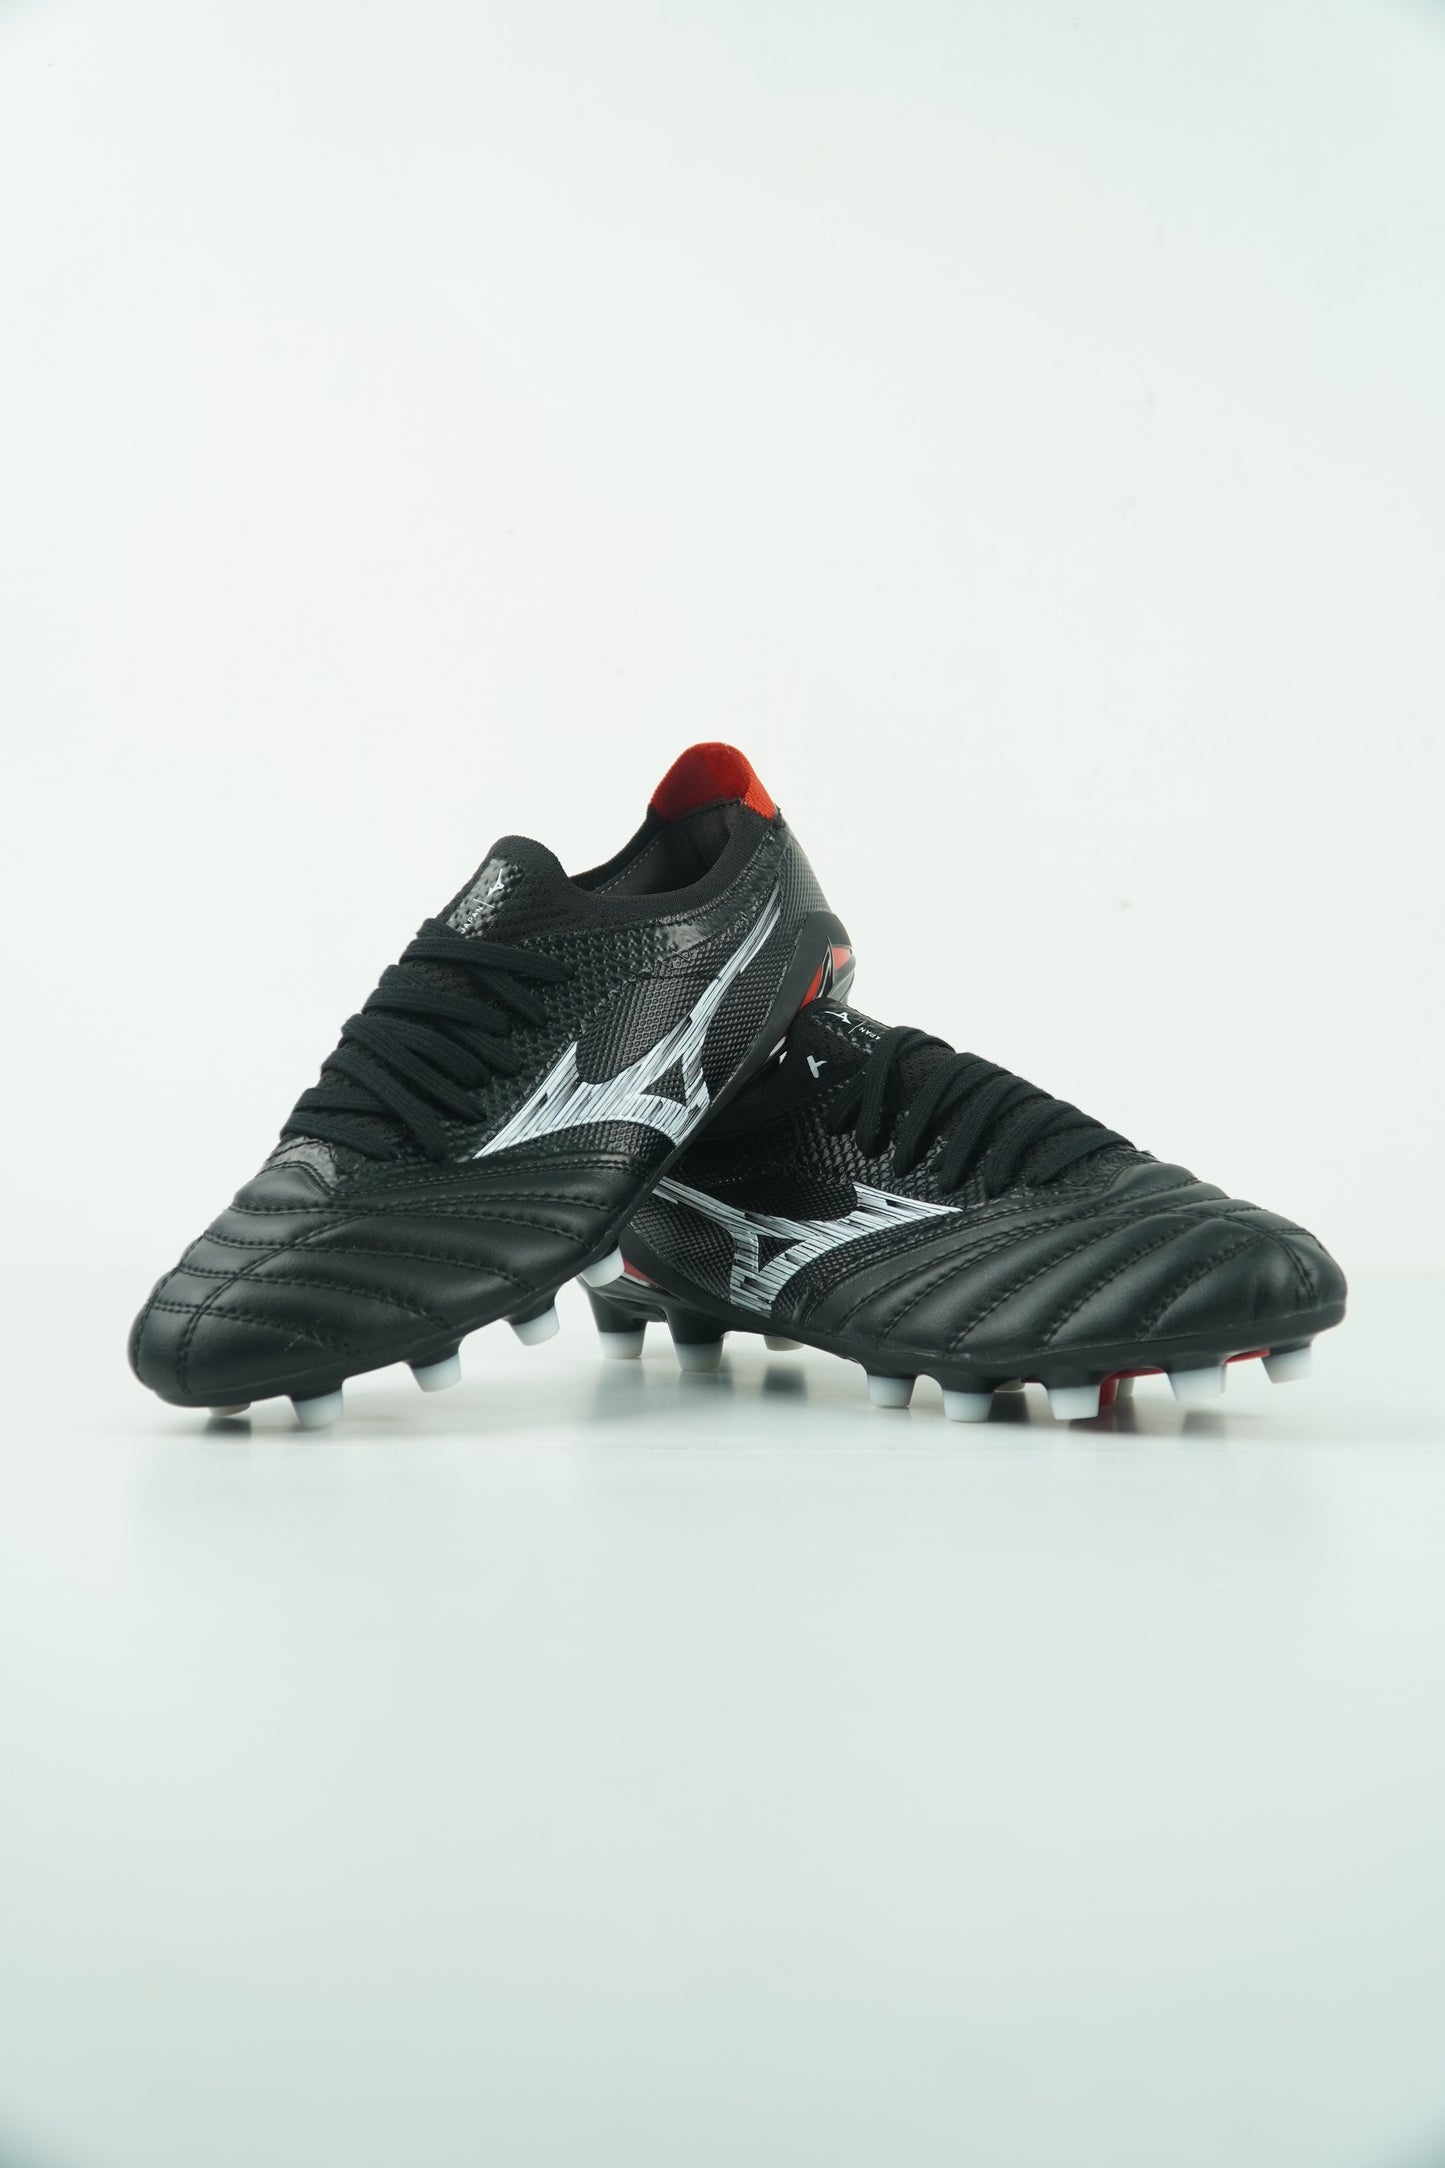 Mizuno FG Black Football Shoes